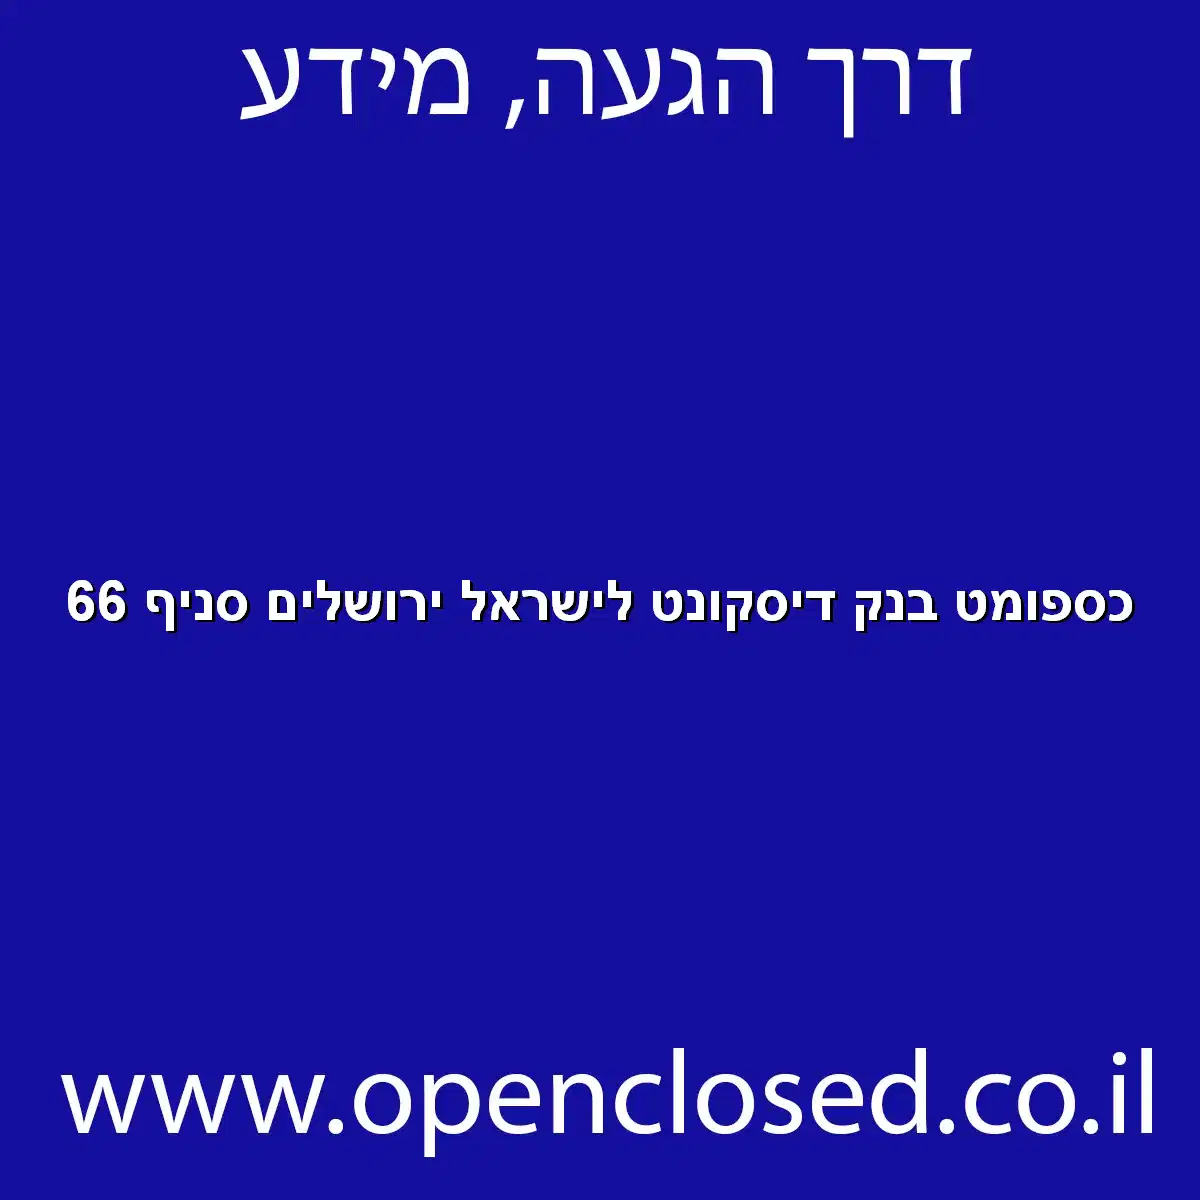 כספומט בנק דיסקונט לישראל ירושלים סניף 66